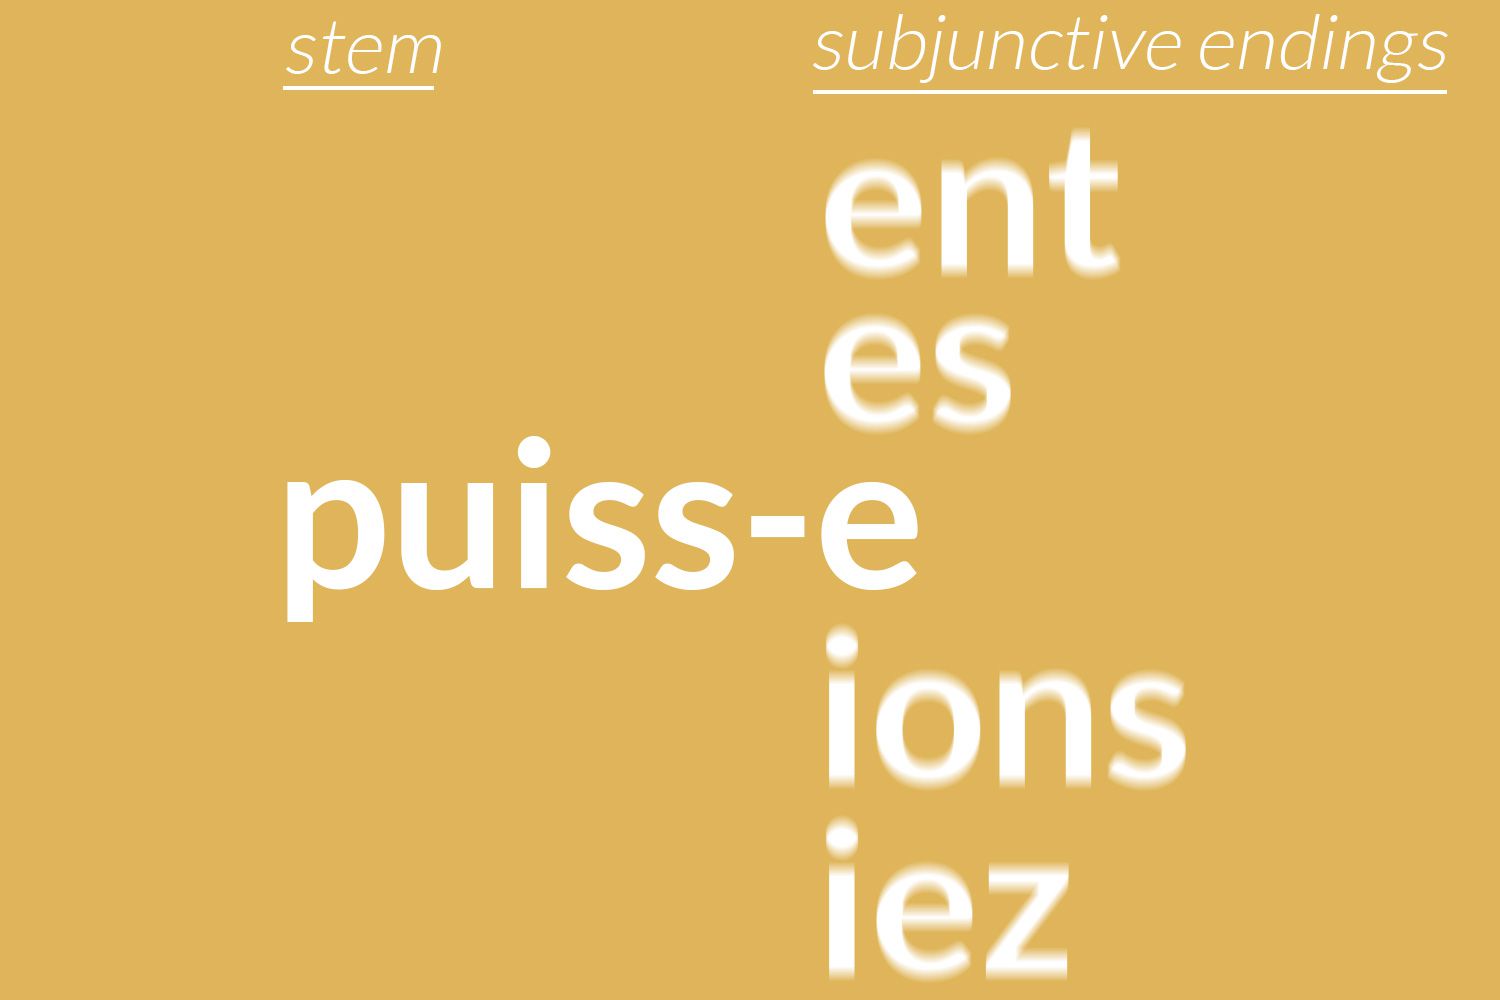 subjunctive endings